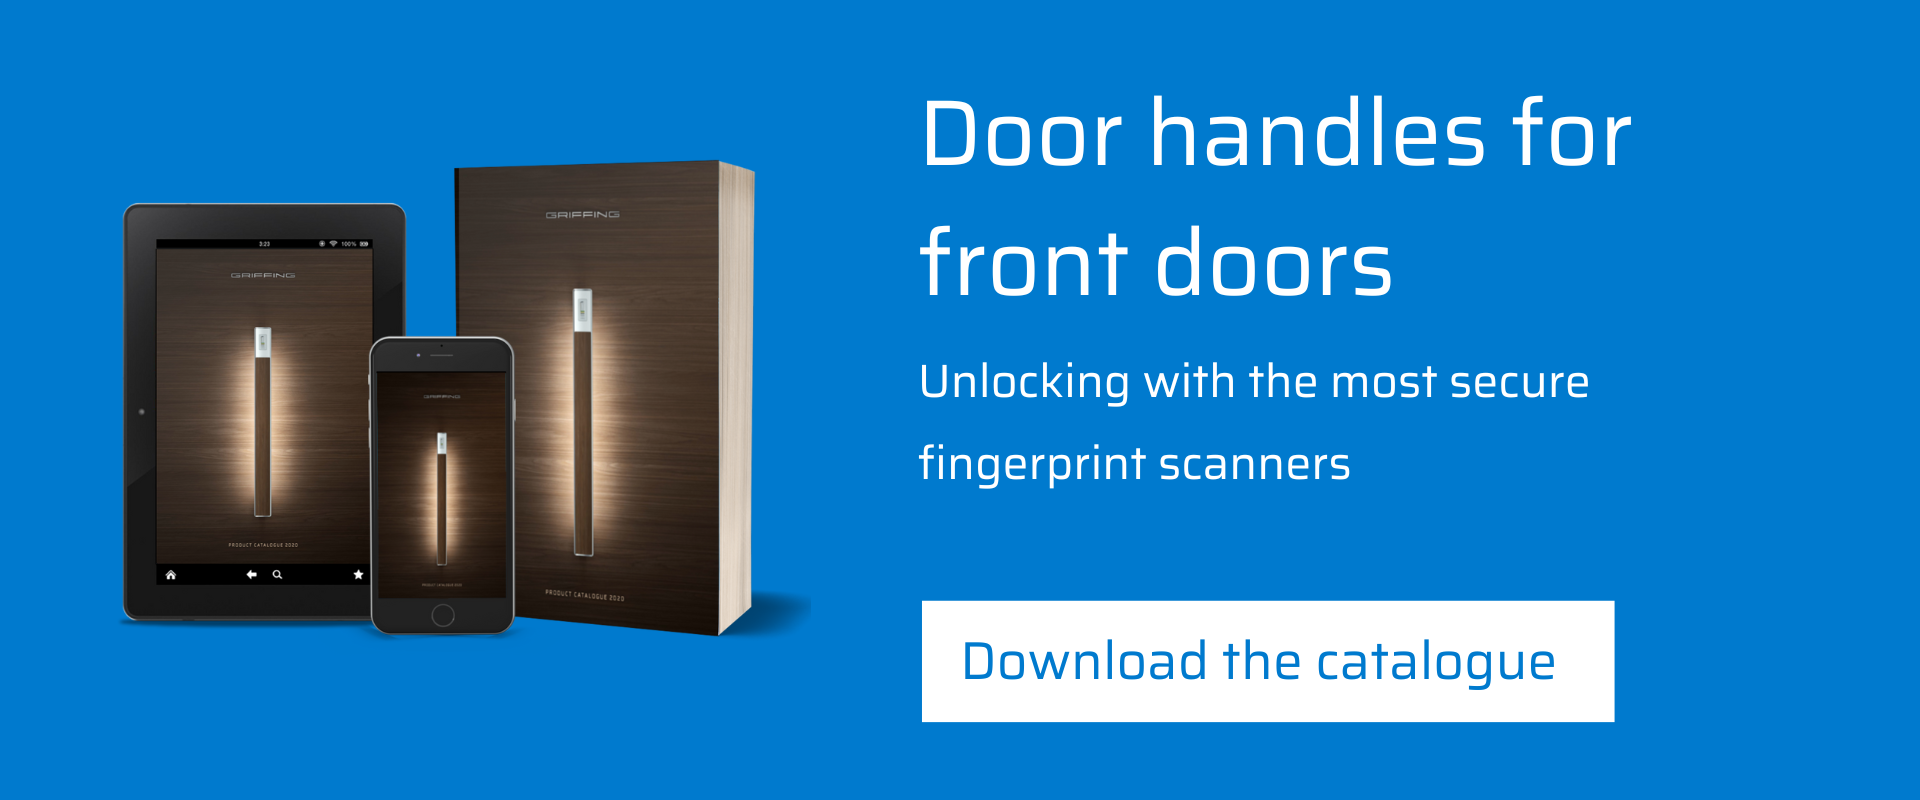 Front door handles-fingerprint scanners-Griffing